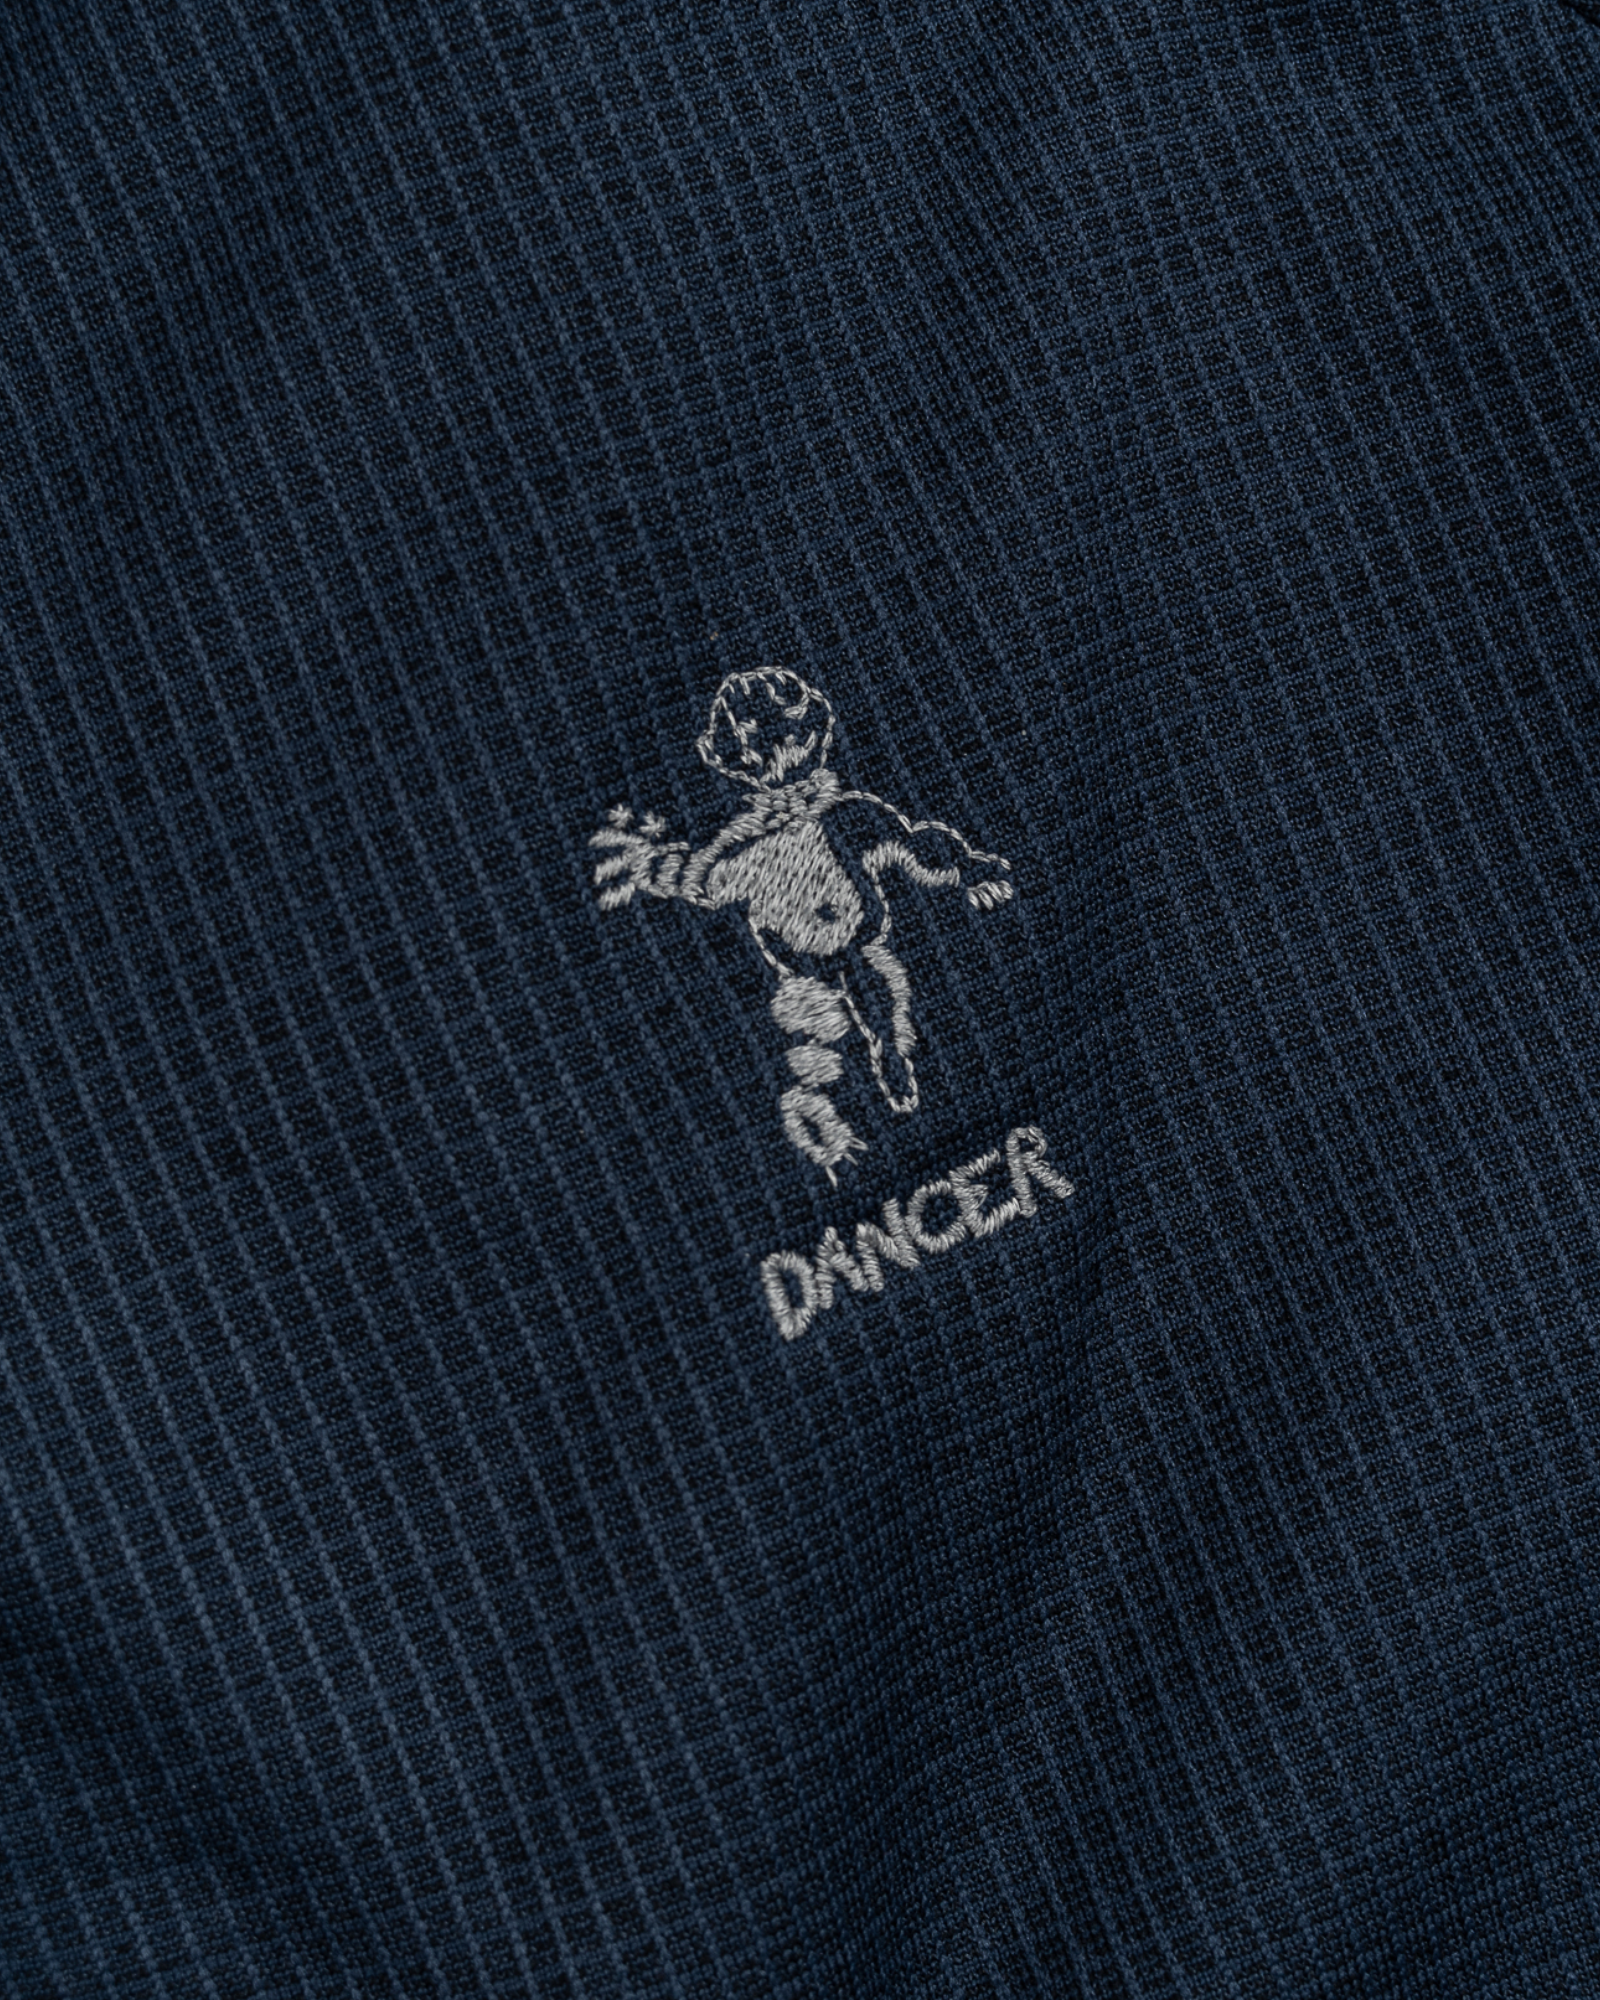 Dancer - Sweat - Fleece  - Zip Track - Navy